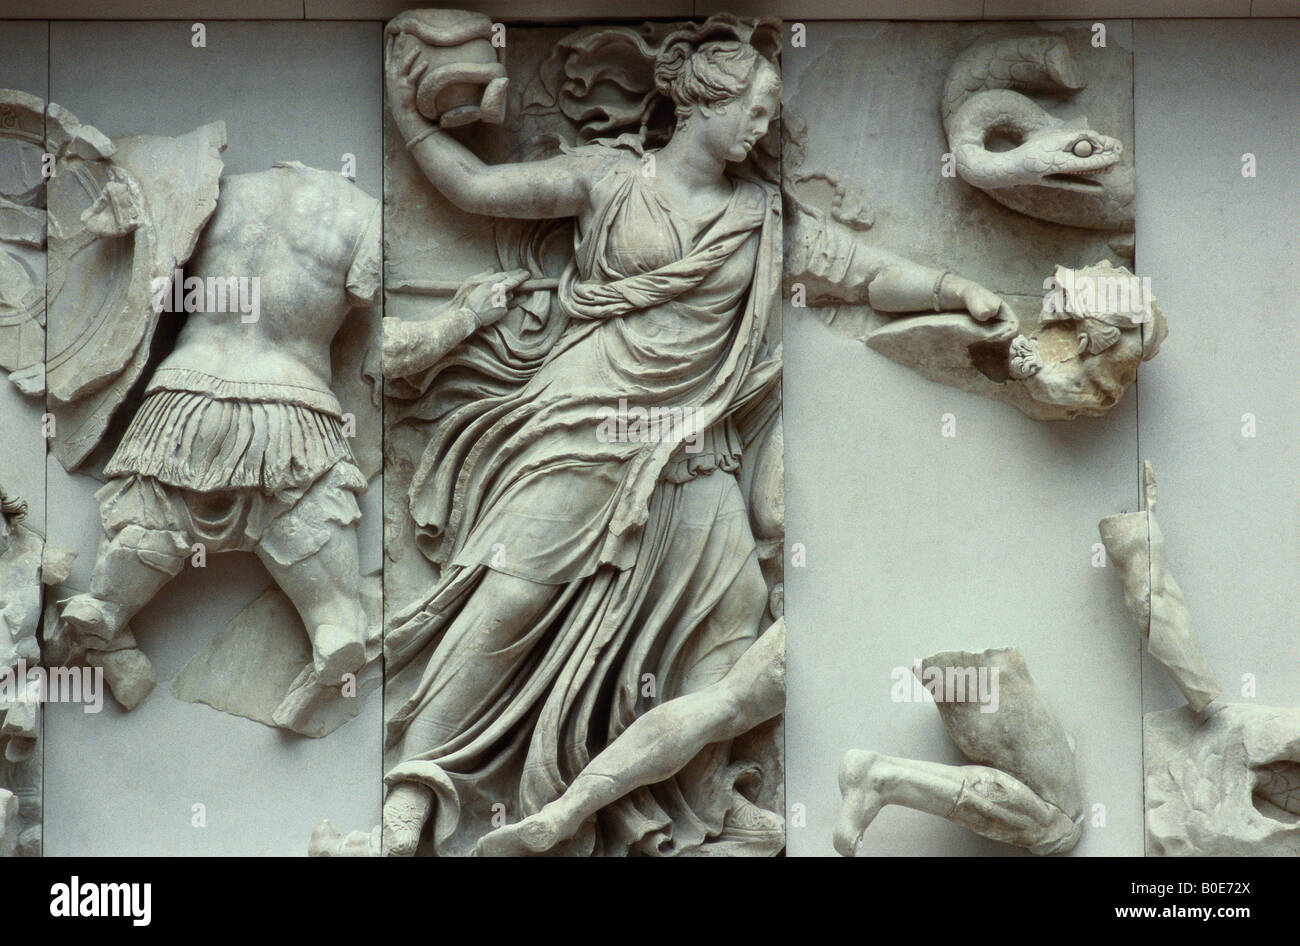 Berlino. Germania. Pergamon Museum. Altare di Pergamon. Gigantomachy fregio, pannello del nord, un giovane dea, eventualmente Nyx o Persefone, getta un vaso con una s Foto Stock